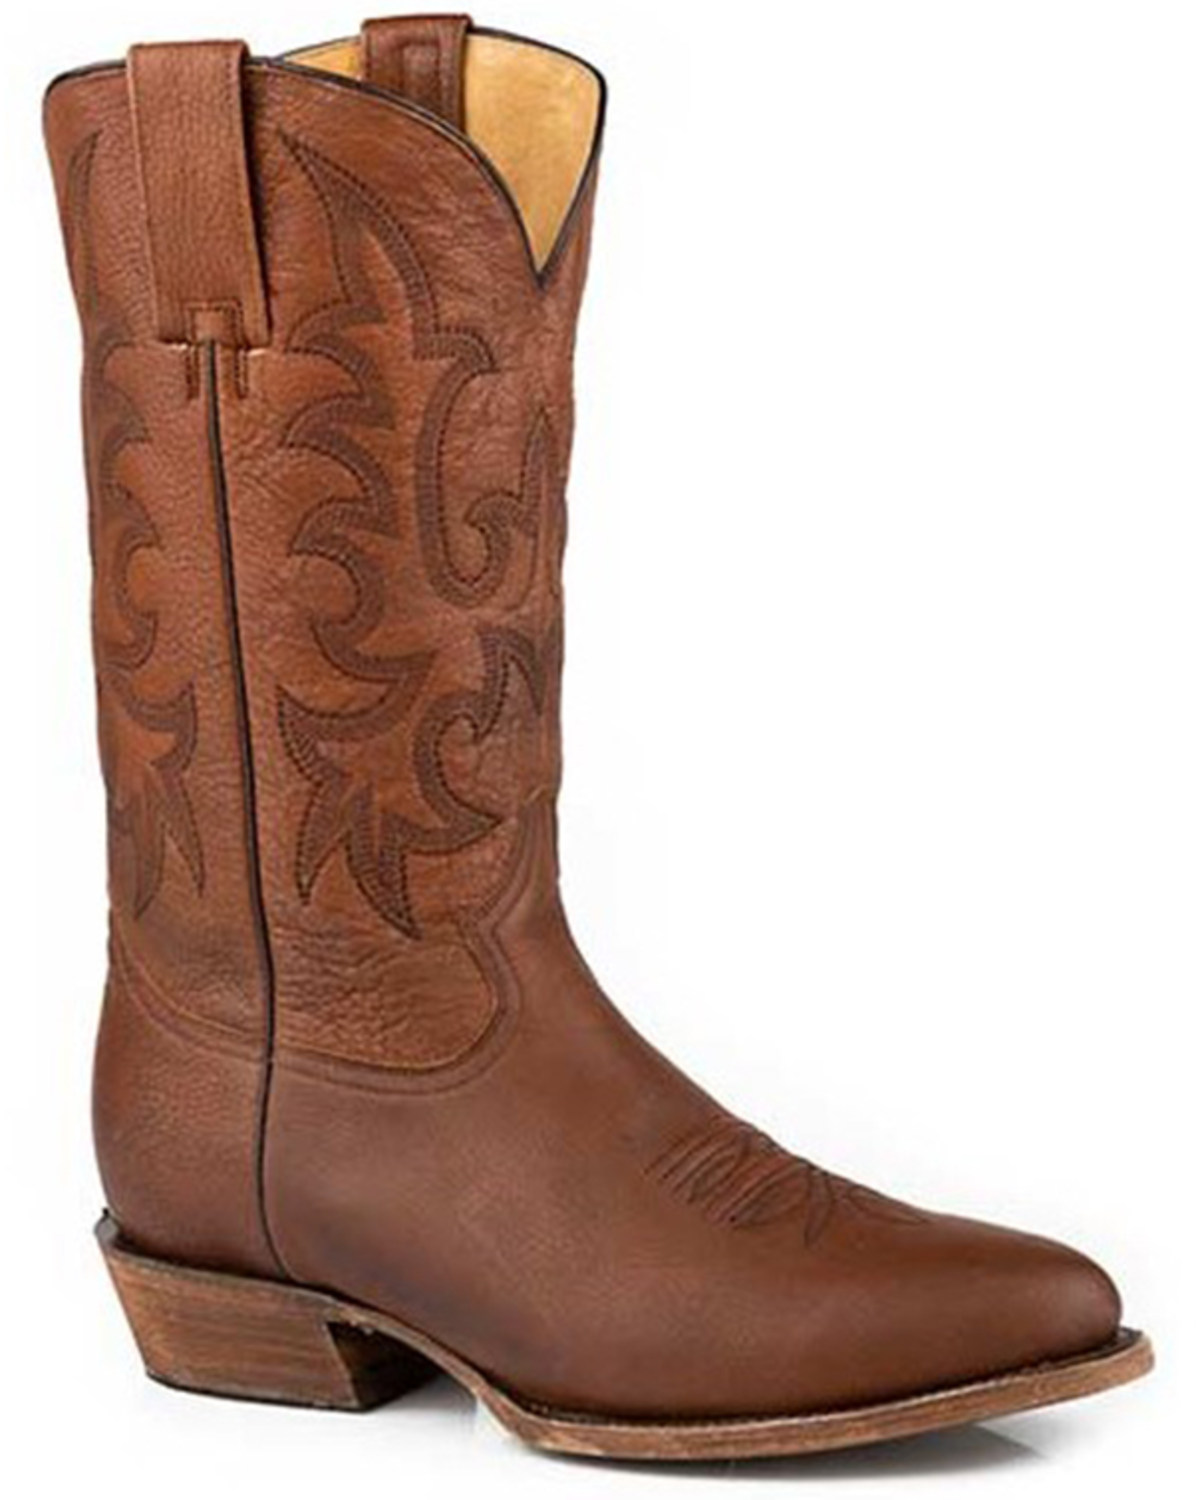 Stetson Men's Sharp Western Boots